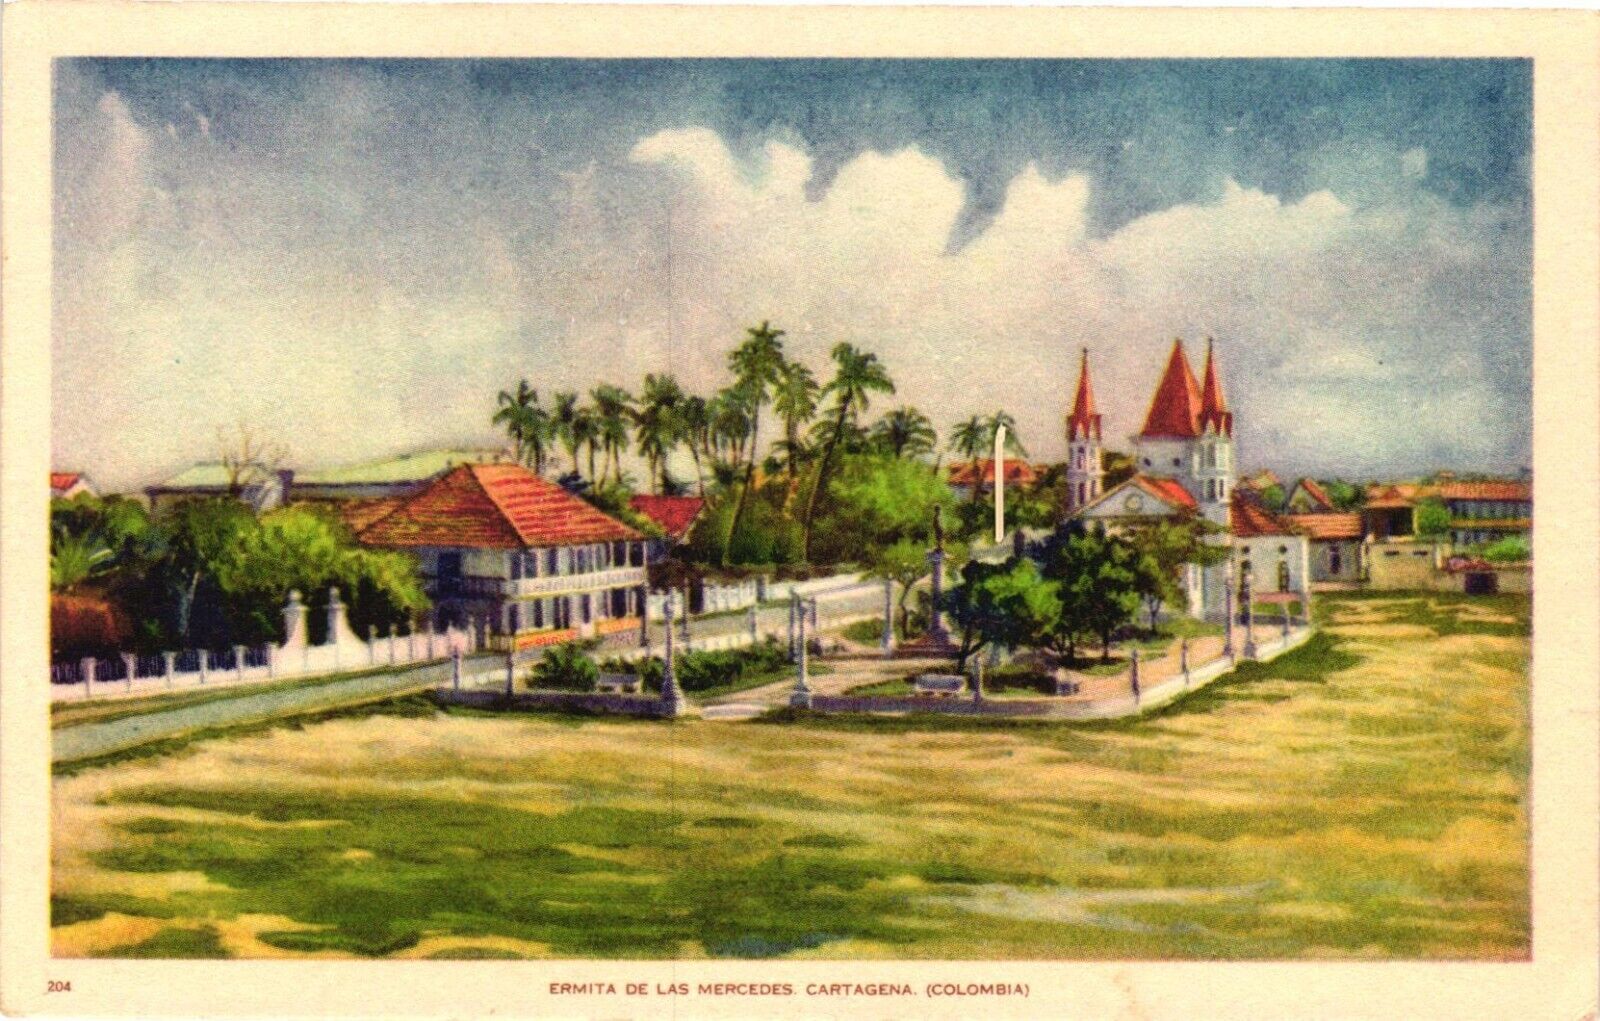 Vintage Postcard- 204. Ermita de las Mercedes Cartagena, Columbia. Unposted 1930